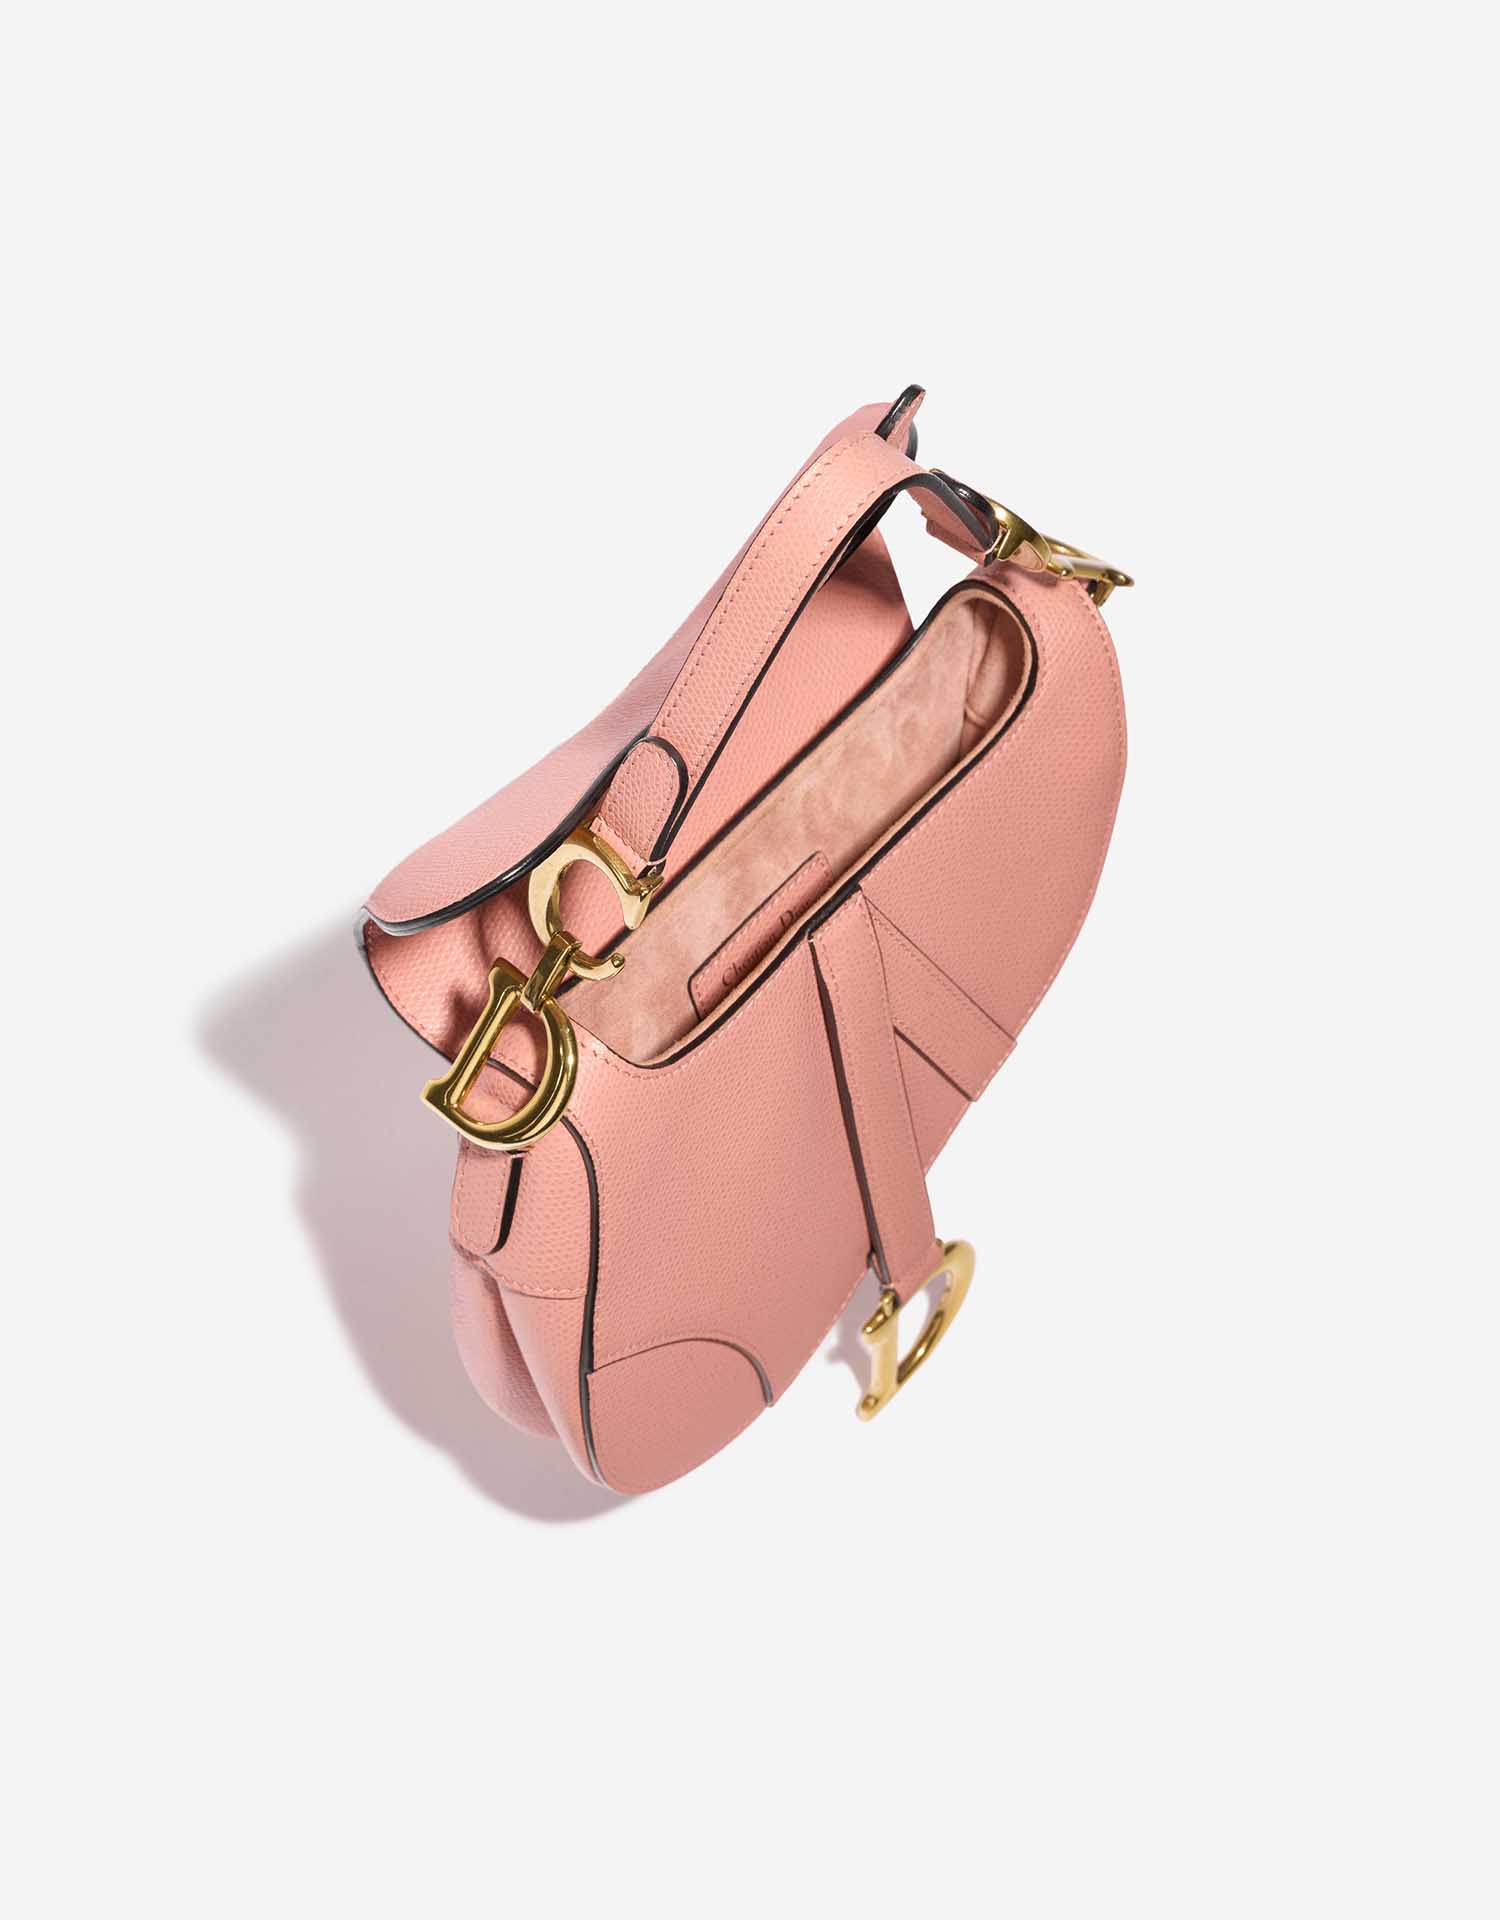 Dior Saddle Mini Pink Inside | Verkaufen Sie Ihre Designertasche auf Saclab.com